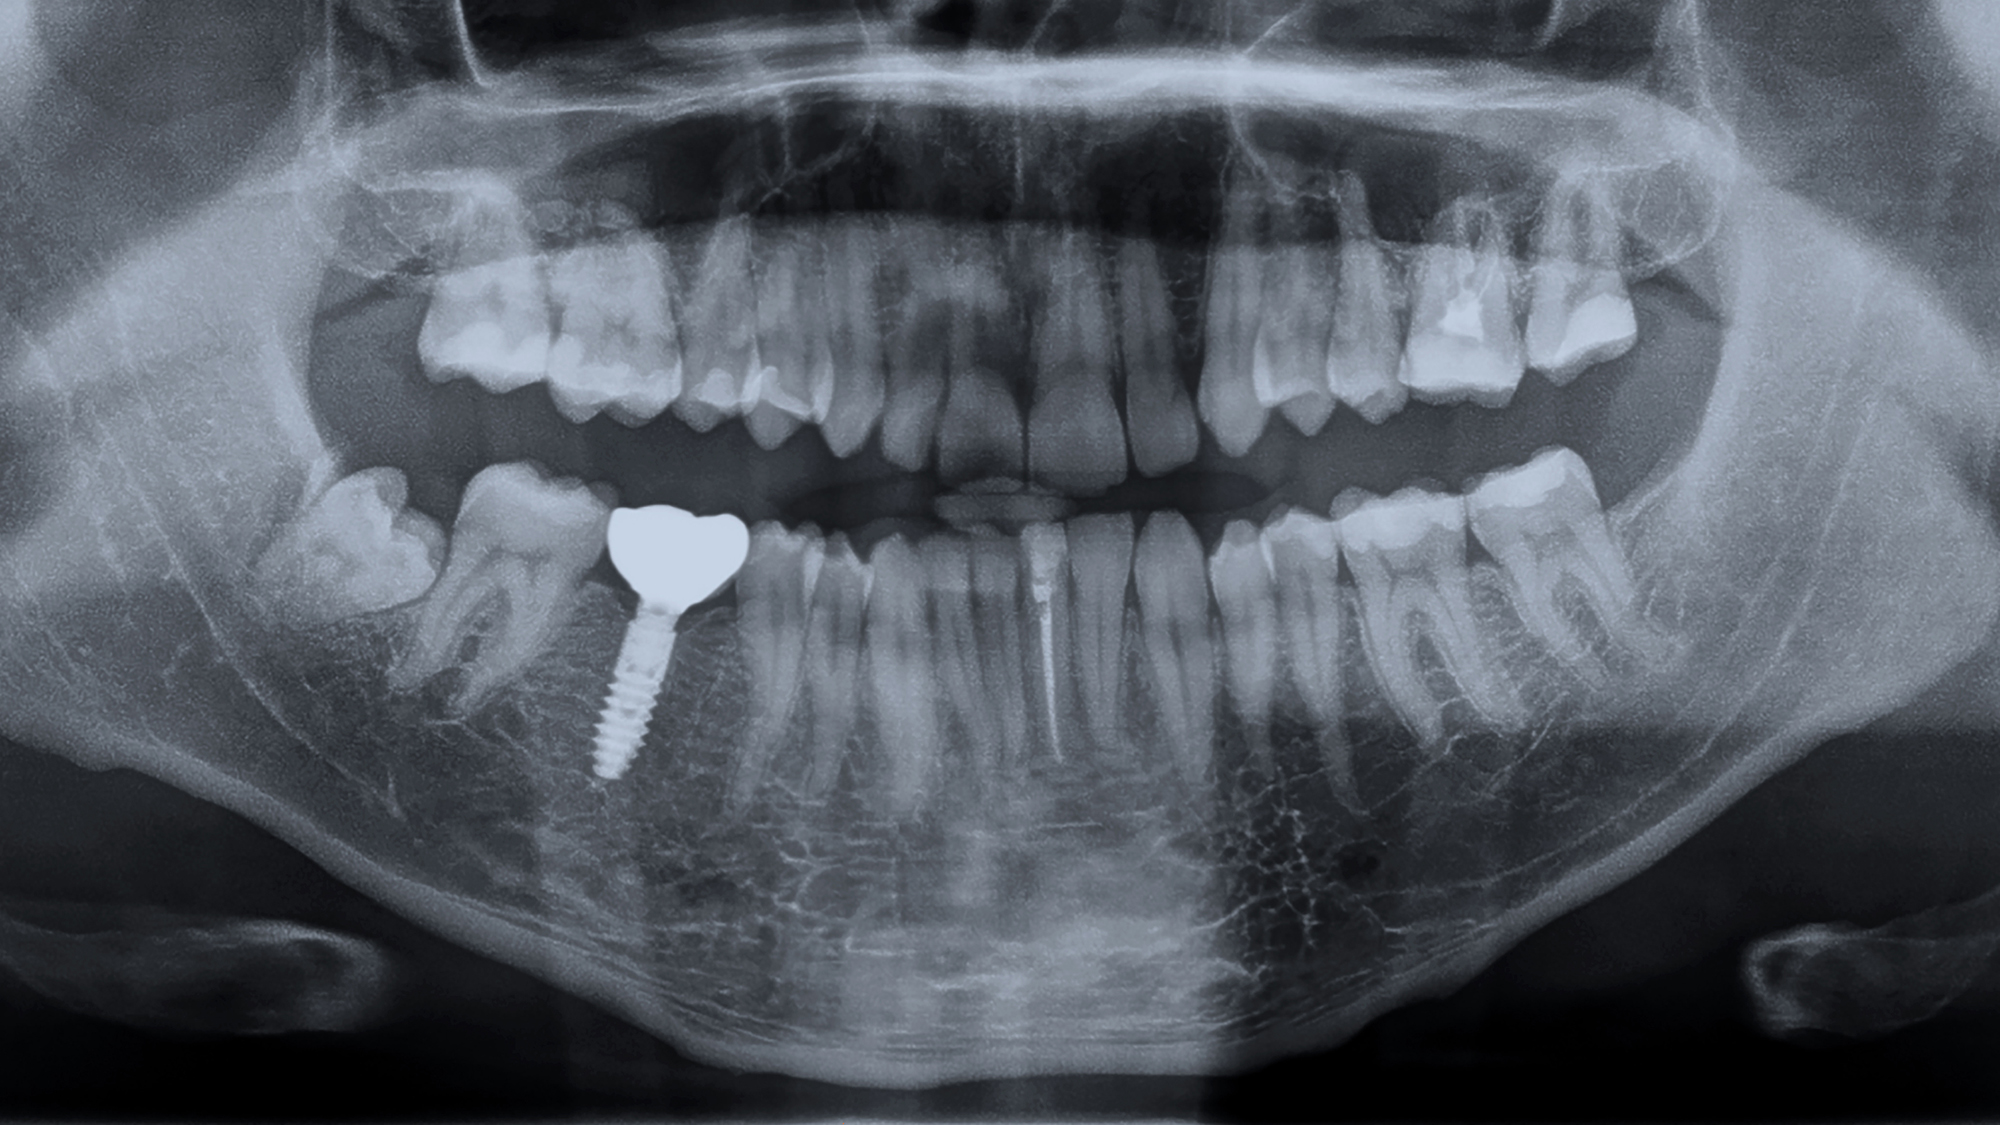 Implantaatverlies: 6 mm versus 10 mm implantaten